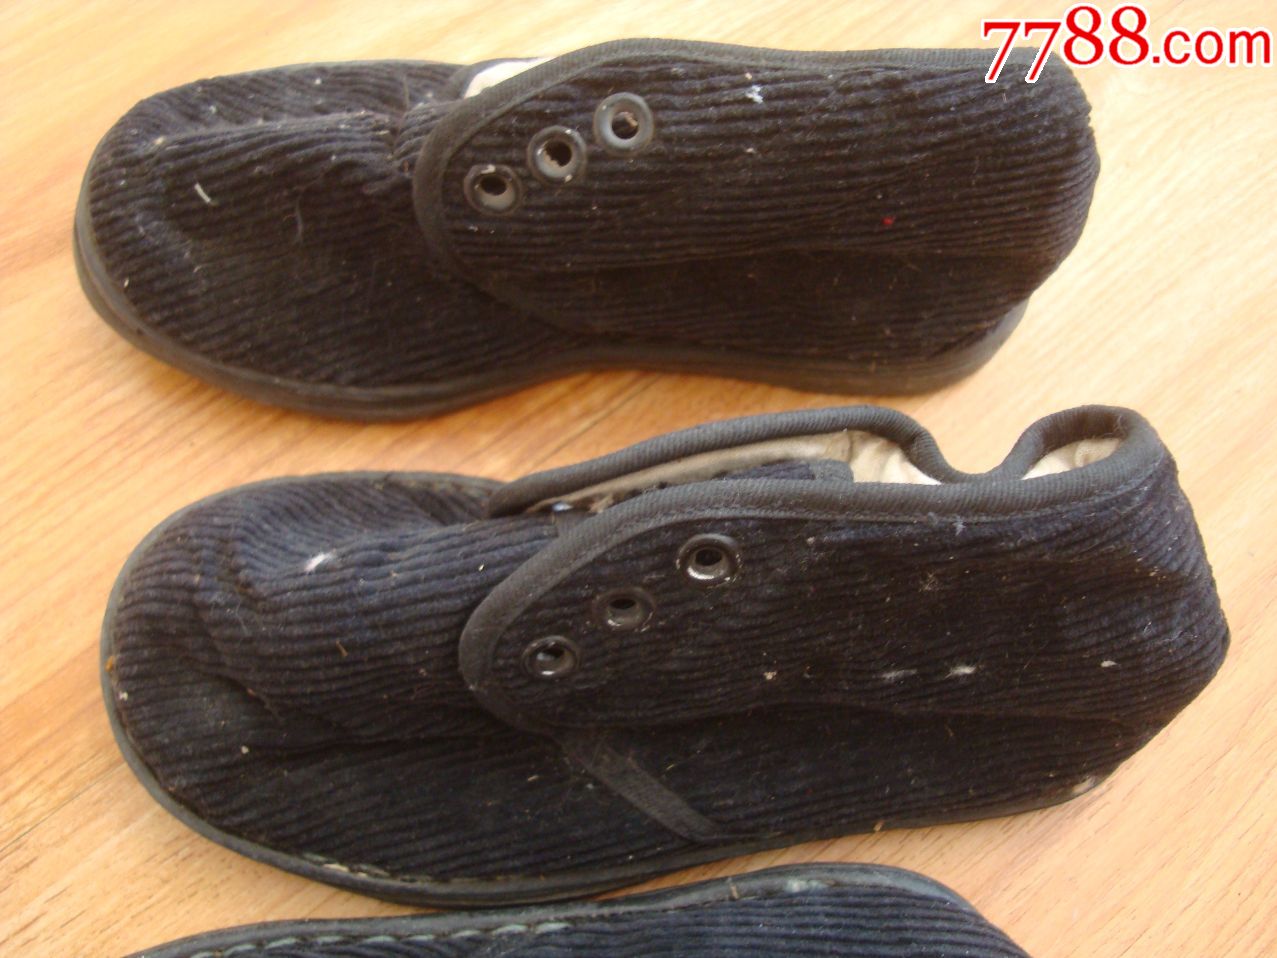 库存未穿过――儿童棉鞋24双合售――锦州市制鞋厂生产